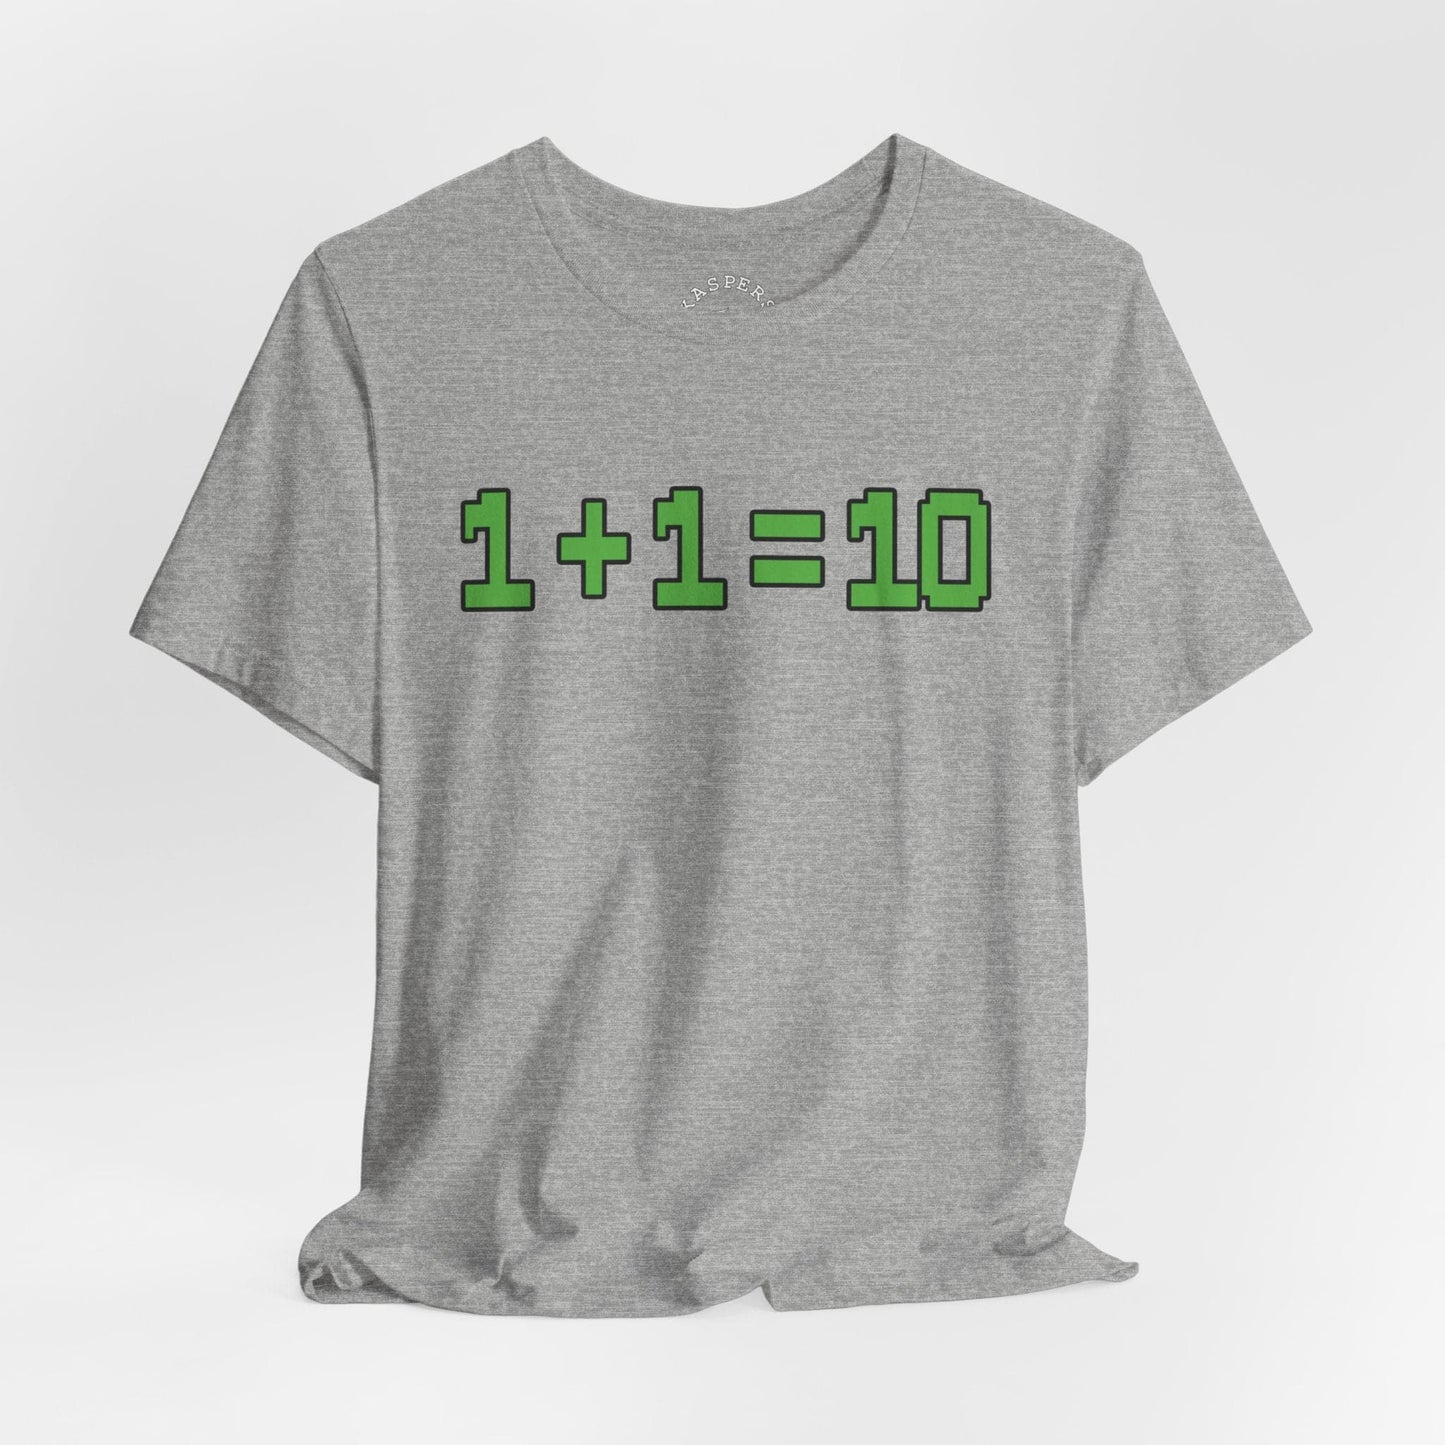 1+1=10 T-Shirt